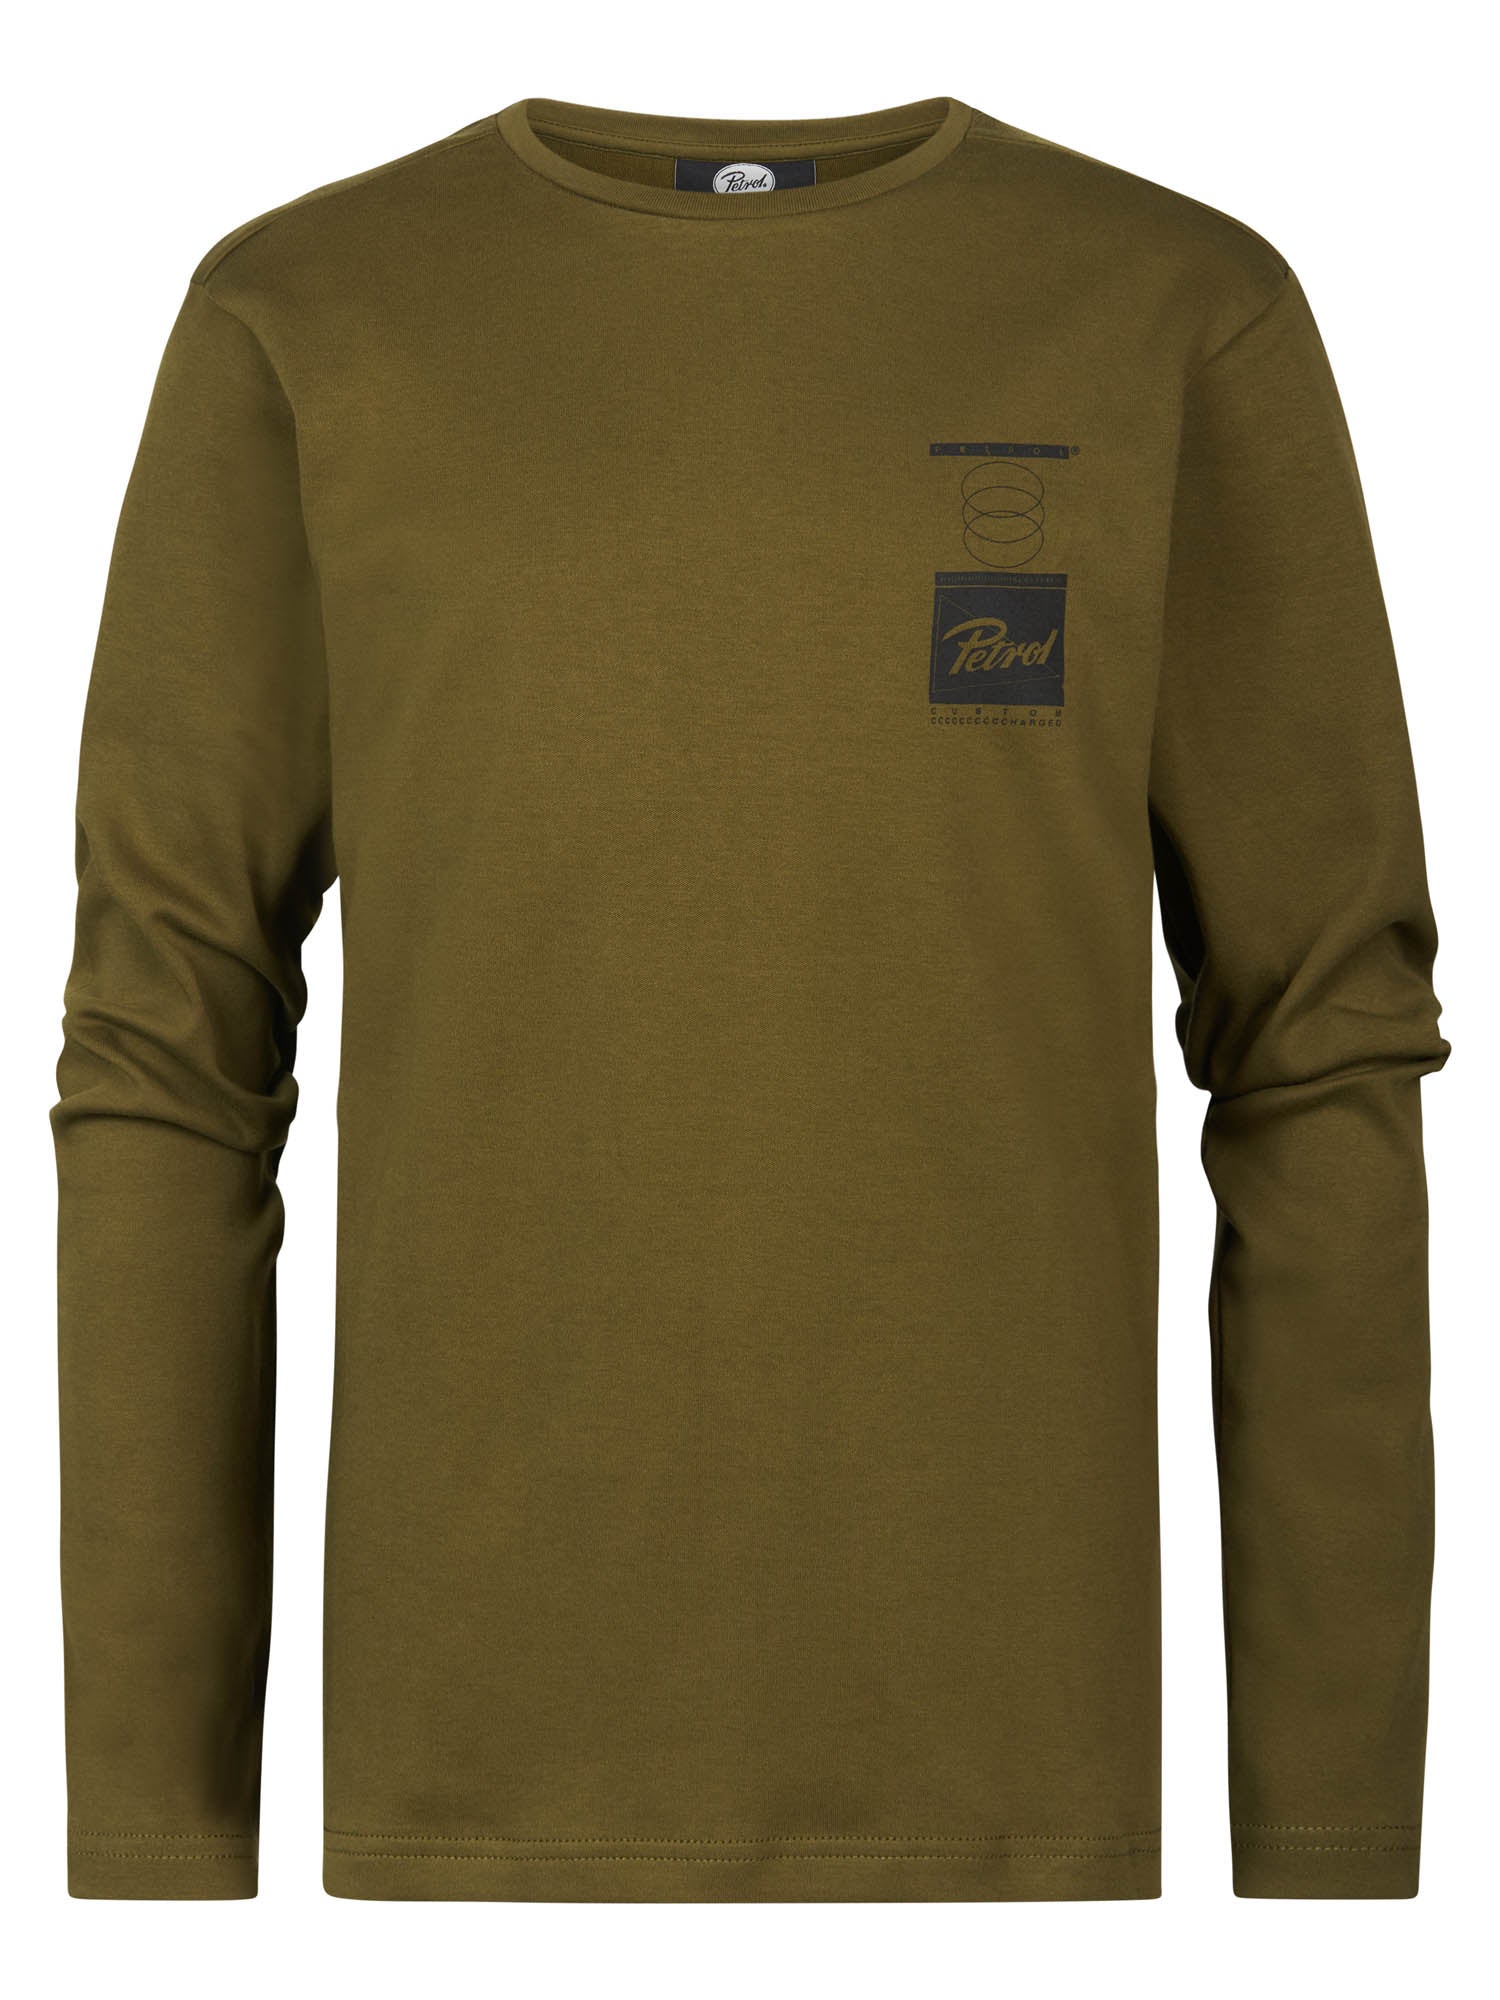 Jongens T-Shirt LS Round Neck van Petrol in de kleur Dark Moss in maat 164.